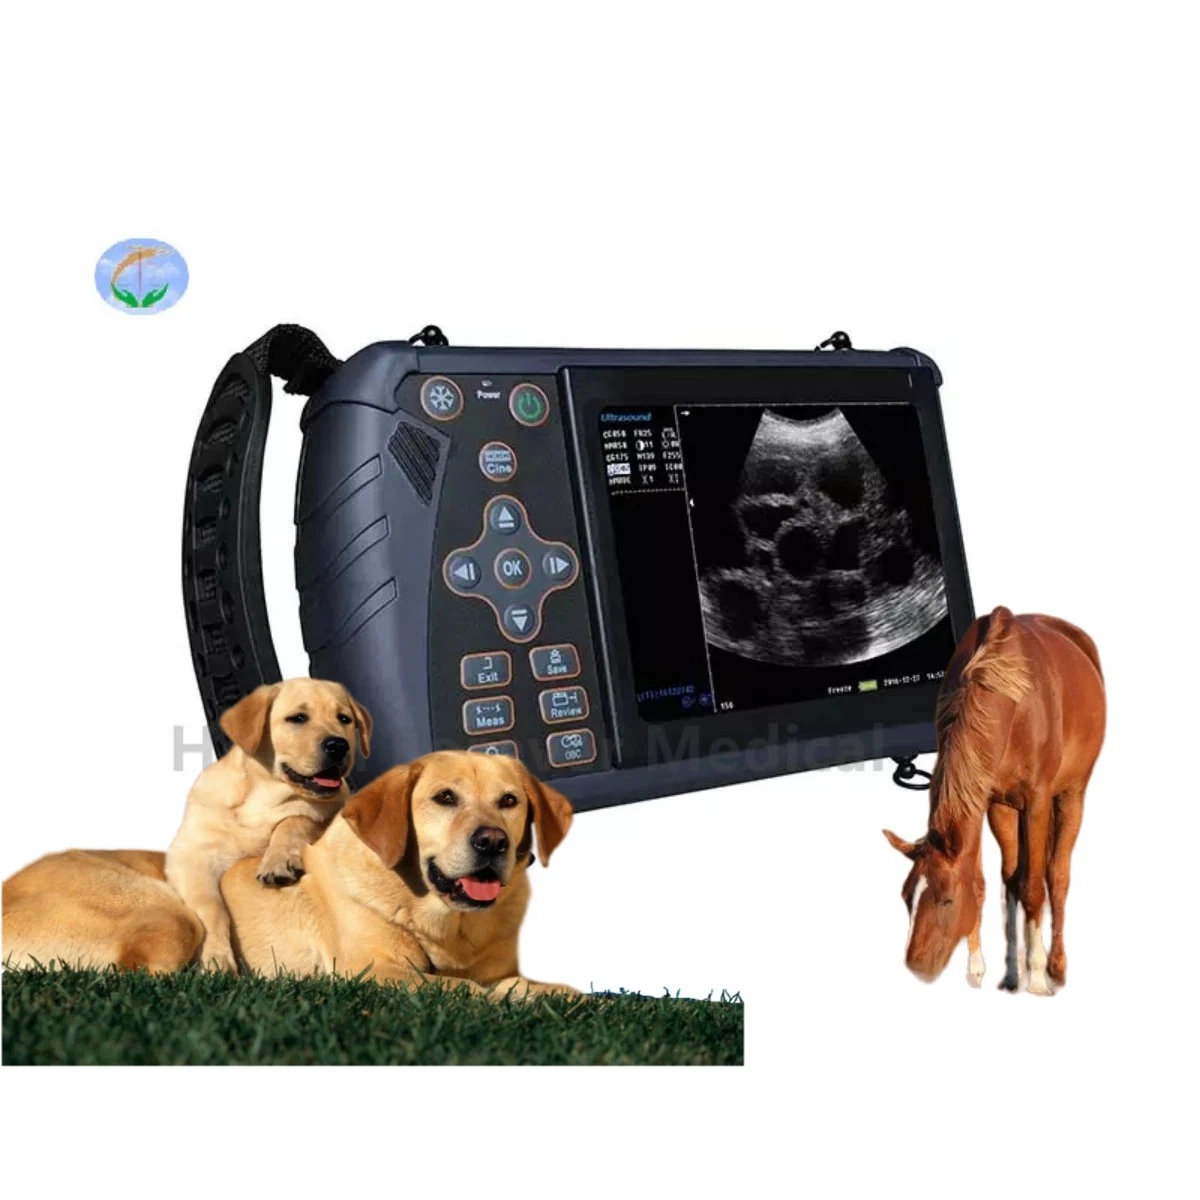 Scanner de ultrassons digital completo portátil para cães de gado bovino veterinário